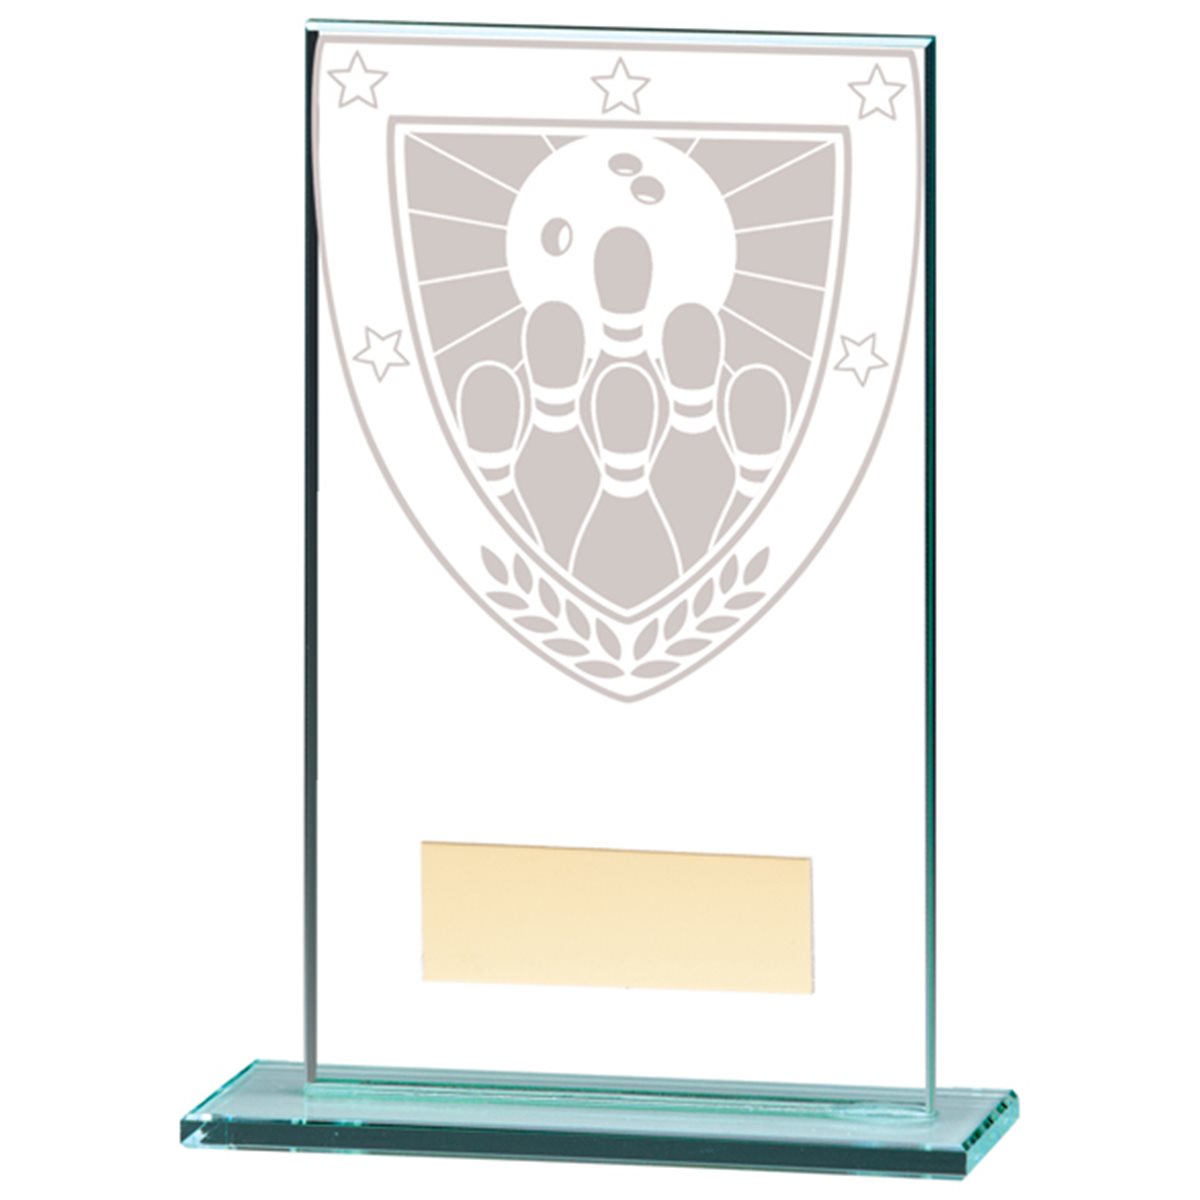 Millennium Ten Pin Bowling Glass Award CR20393